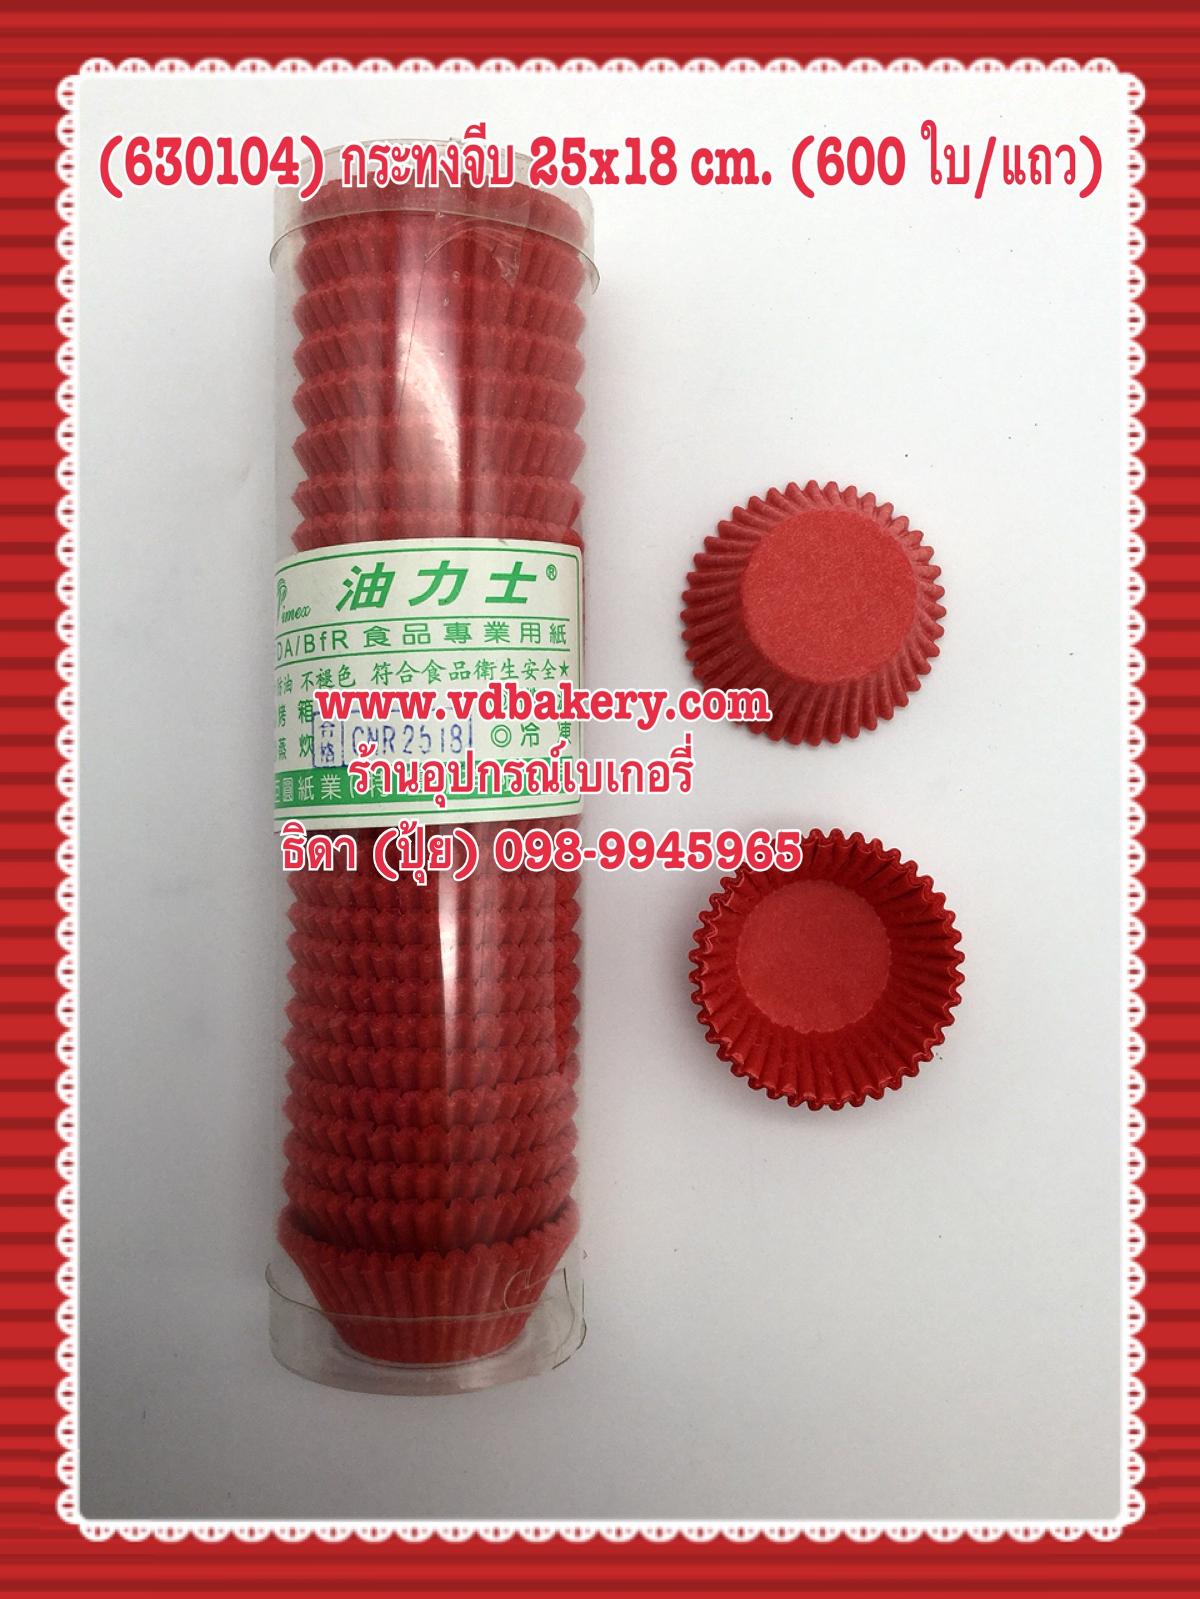 (630104) กระทงจีบ CNR-2518 สีแดง (600ใบ/แถว)